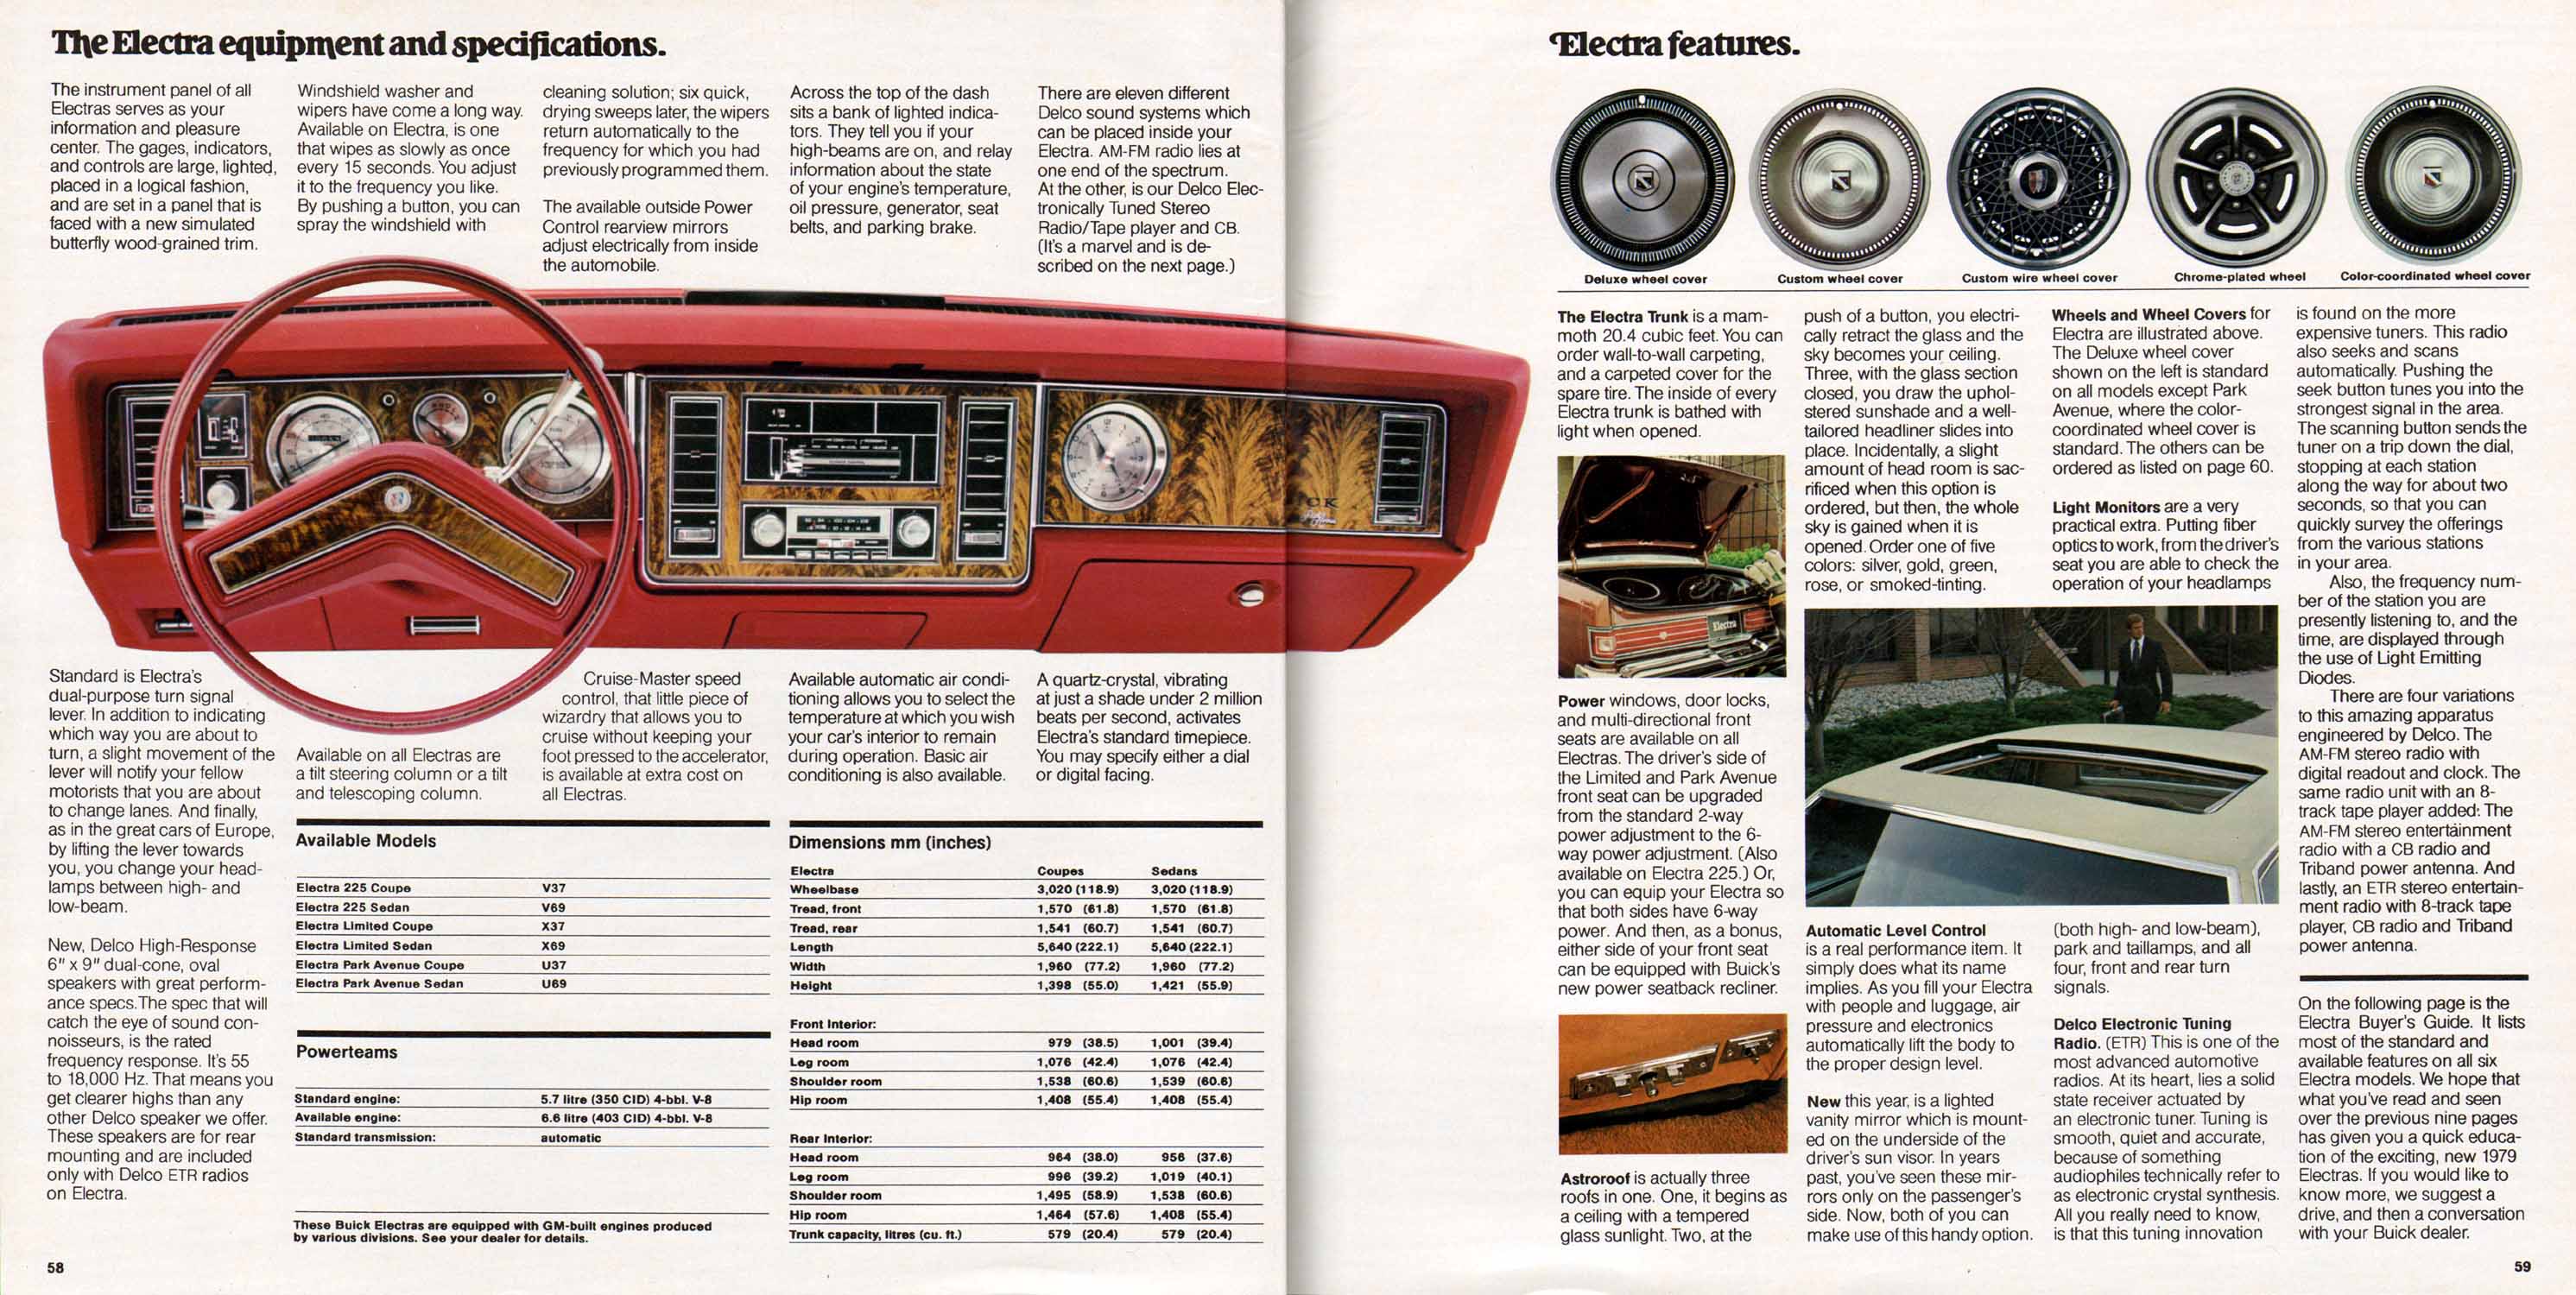 1979 Buick Full Line Prestige-58-59